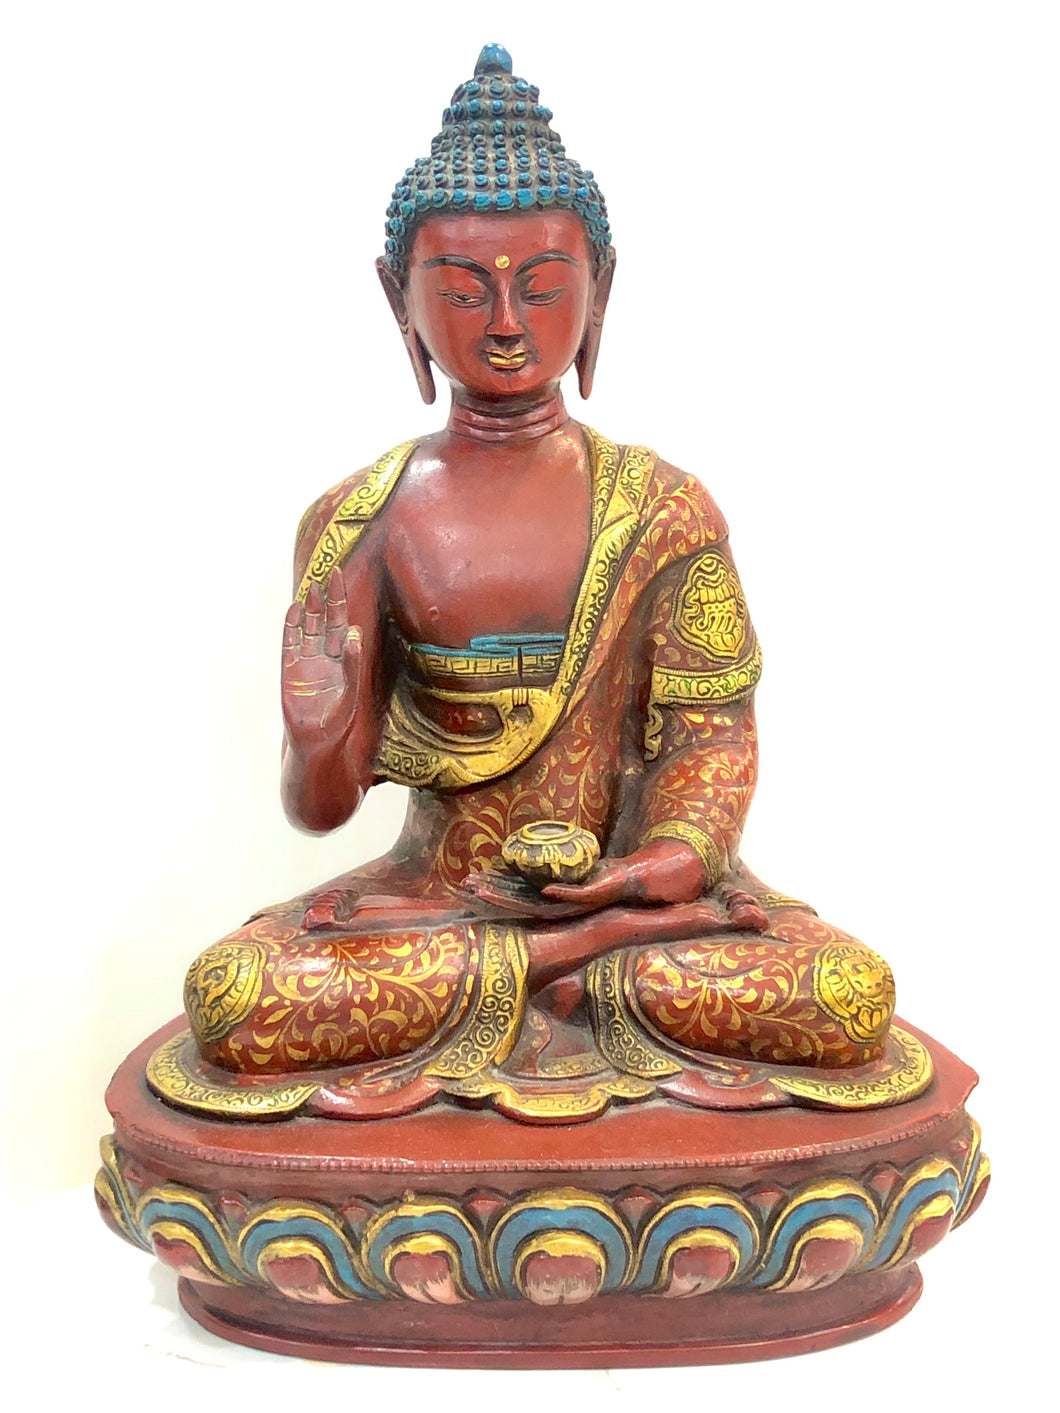 Tathagat (Lord Buddha In Panchdhatu)